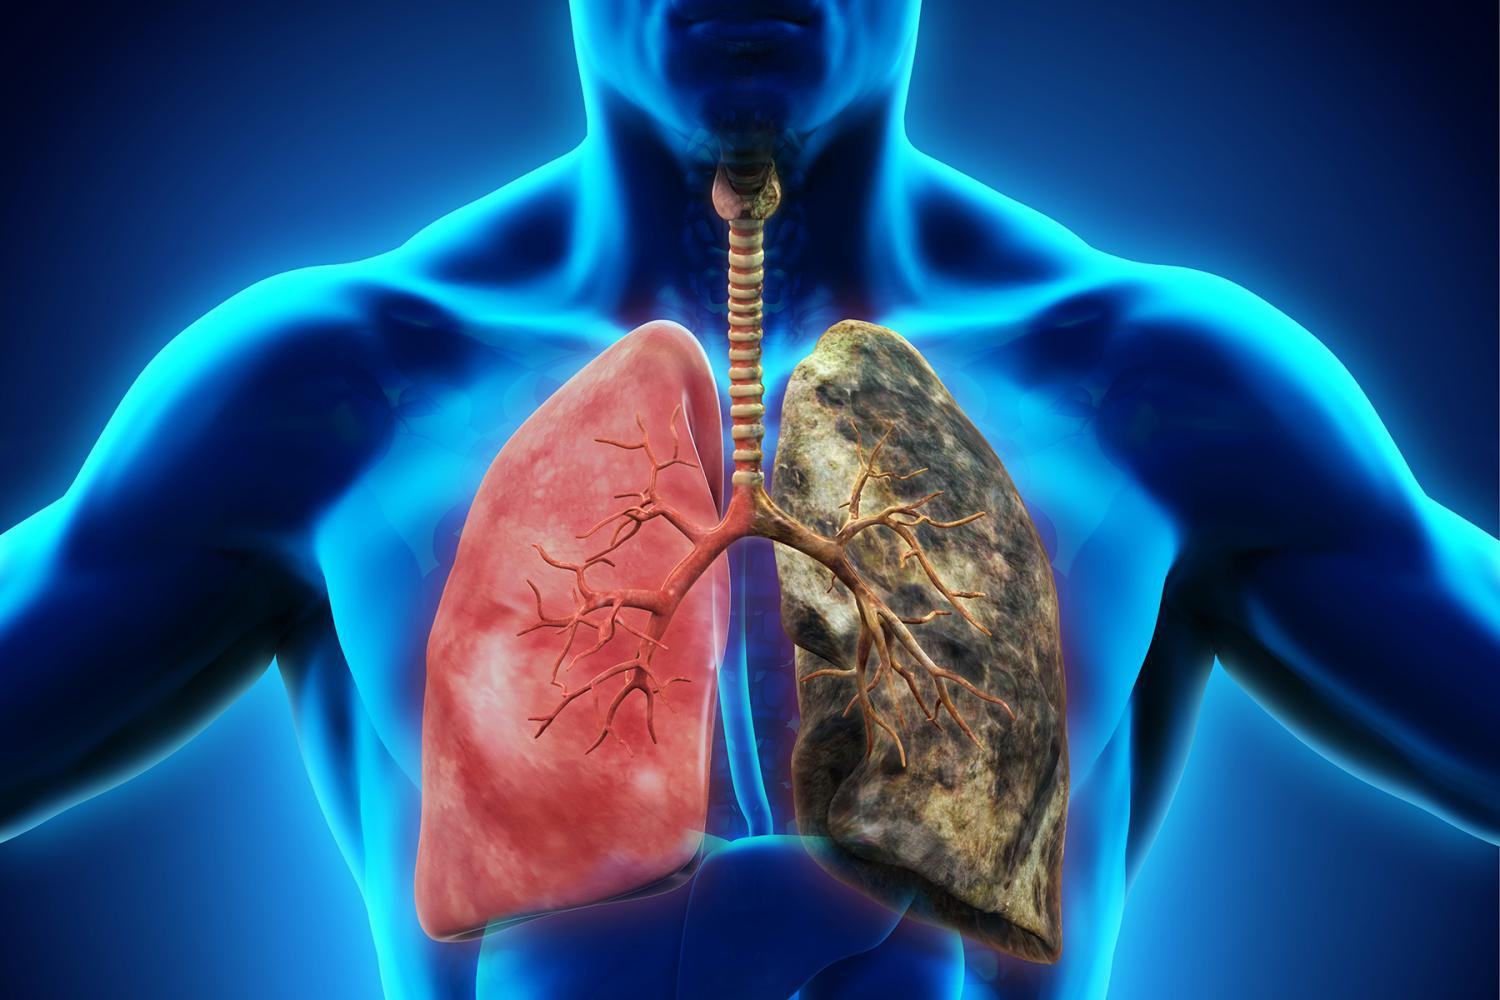 Ung thư phổi: Căn bệnh có thể mắc phải bất cứ lúc nào và nguyên nhân lại đến từ những thứ thân thuộc xung quanh bạn - Ảnh 5.